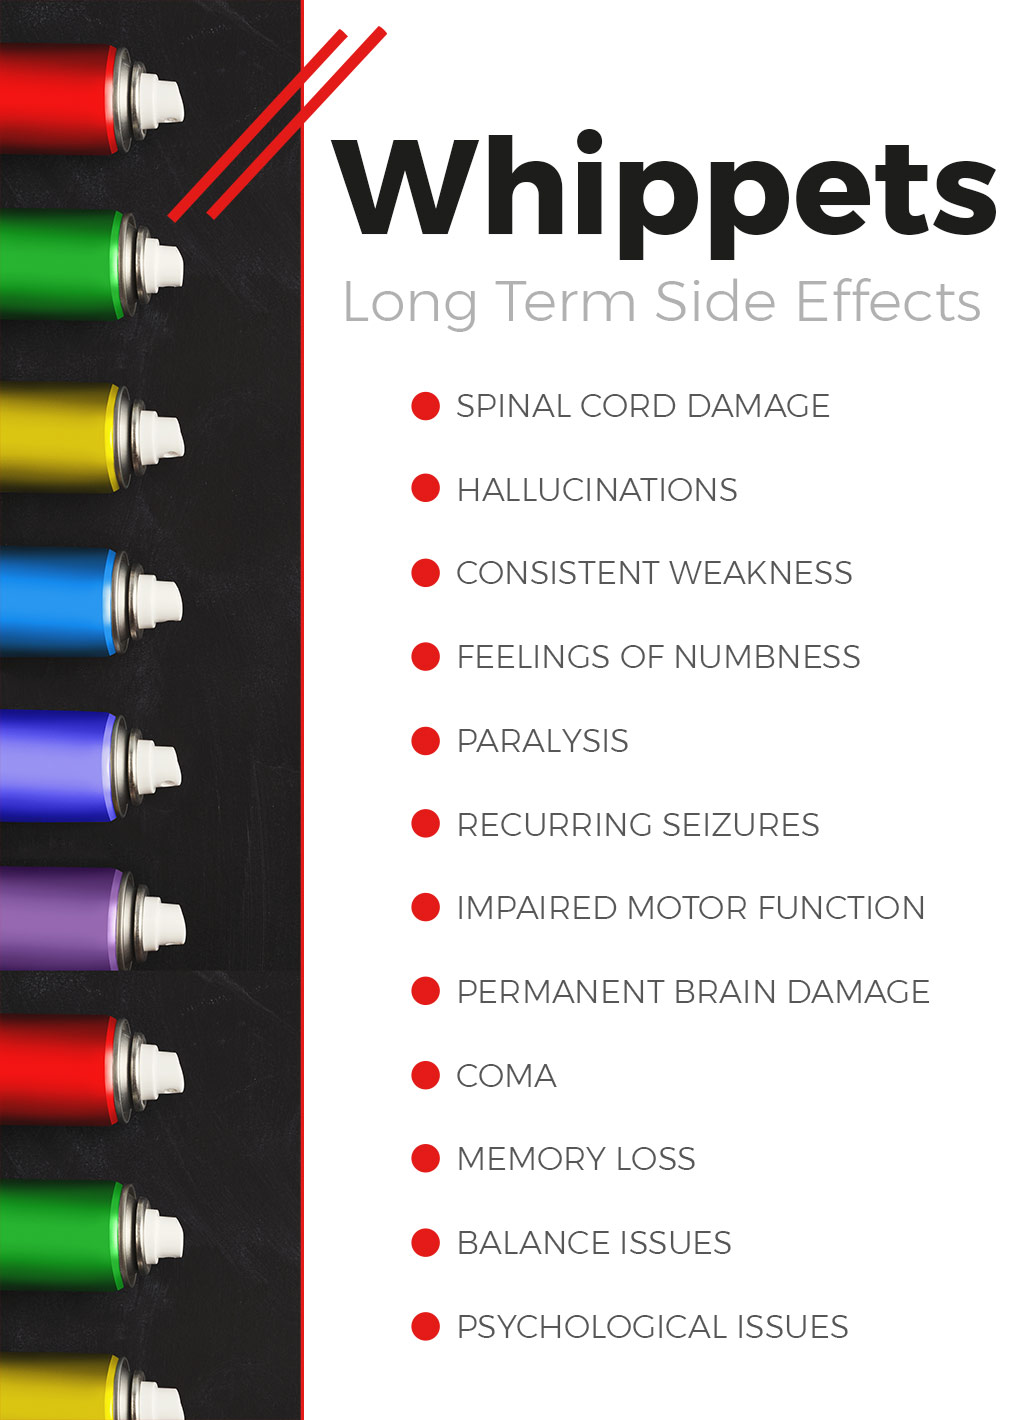 Whippets Drug Dangers